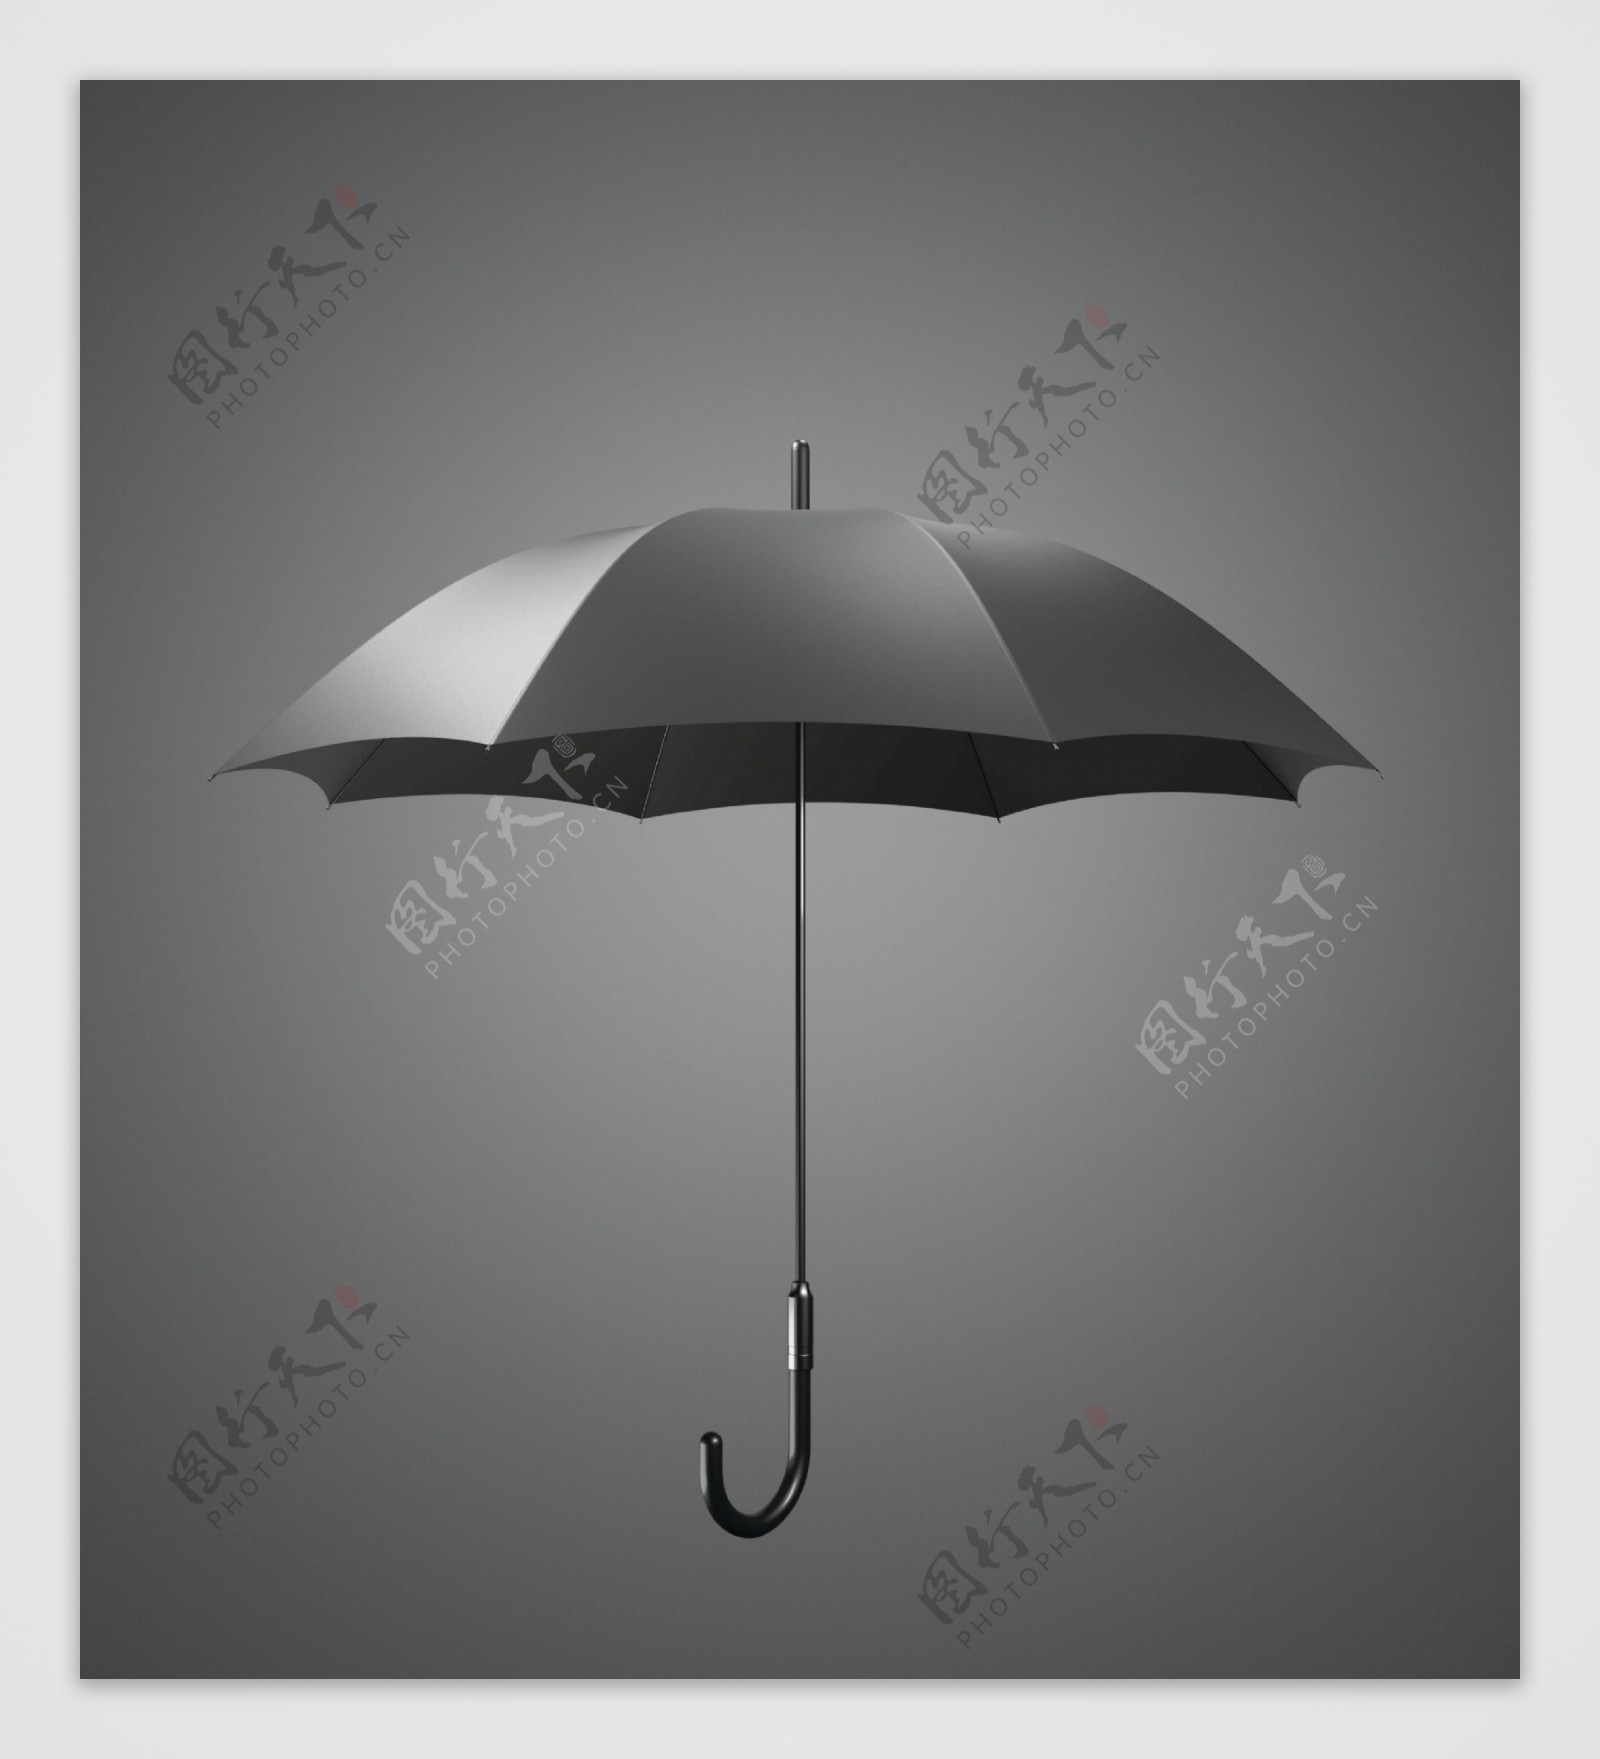 黑色雨伞图片